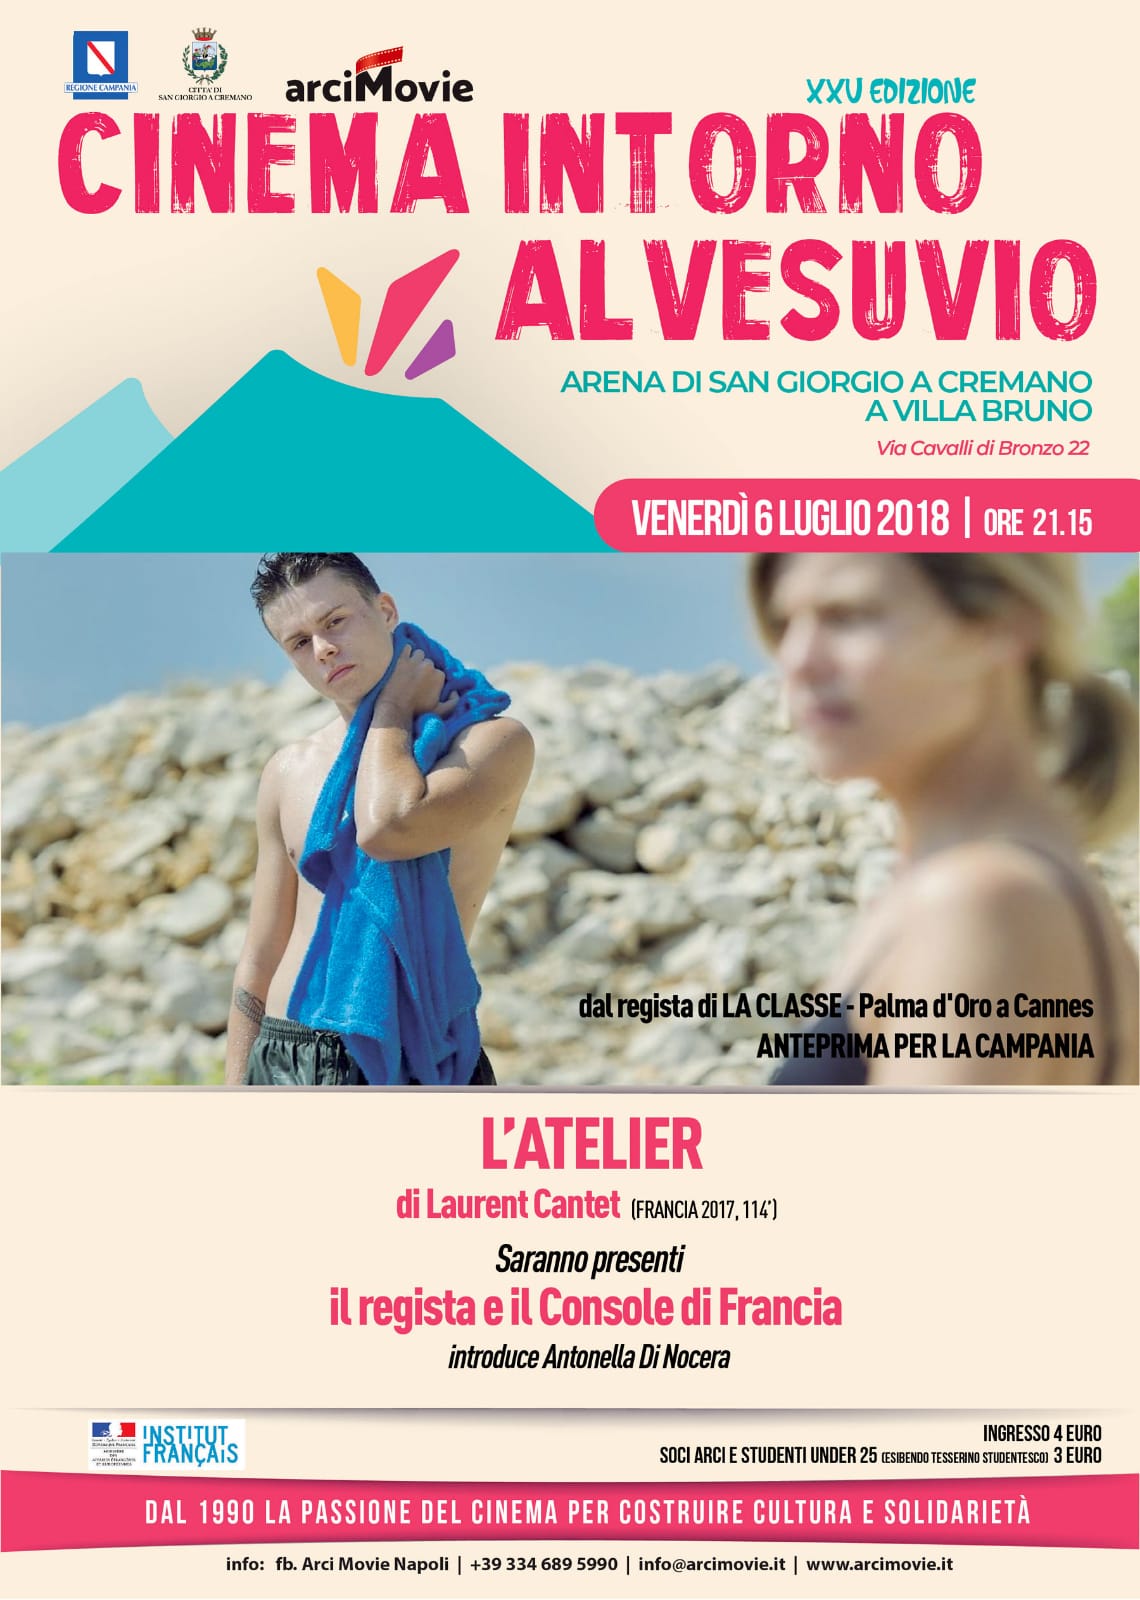 Domani il regista Laurent Cantet presenta il suo “L’Atelier” a cinema intorno al Vesuvio